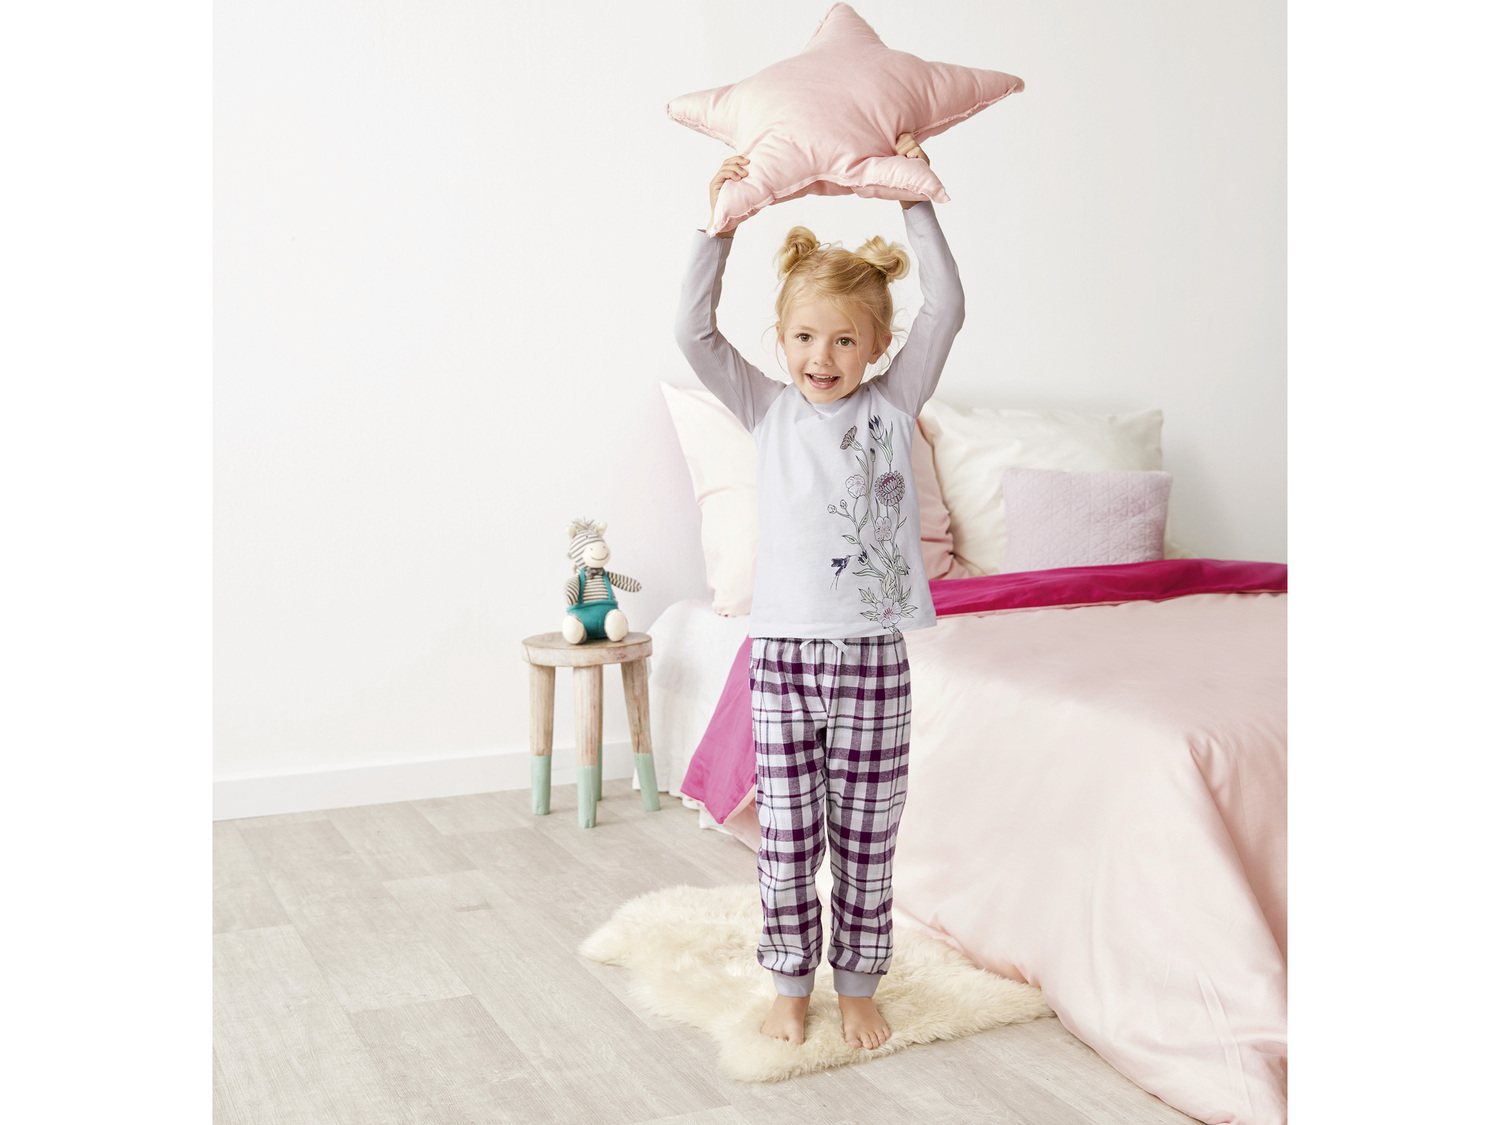 Piżama dziecięca Lupilu, cena 19,99 PLN 
- rozmiary: 86-116
- spodnie z ciepłej ...